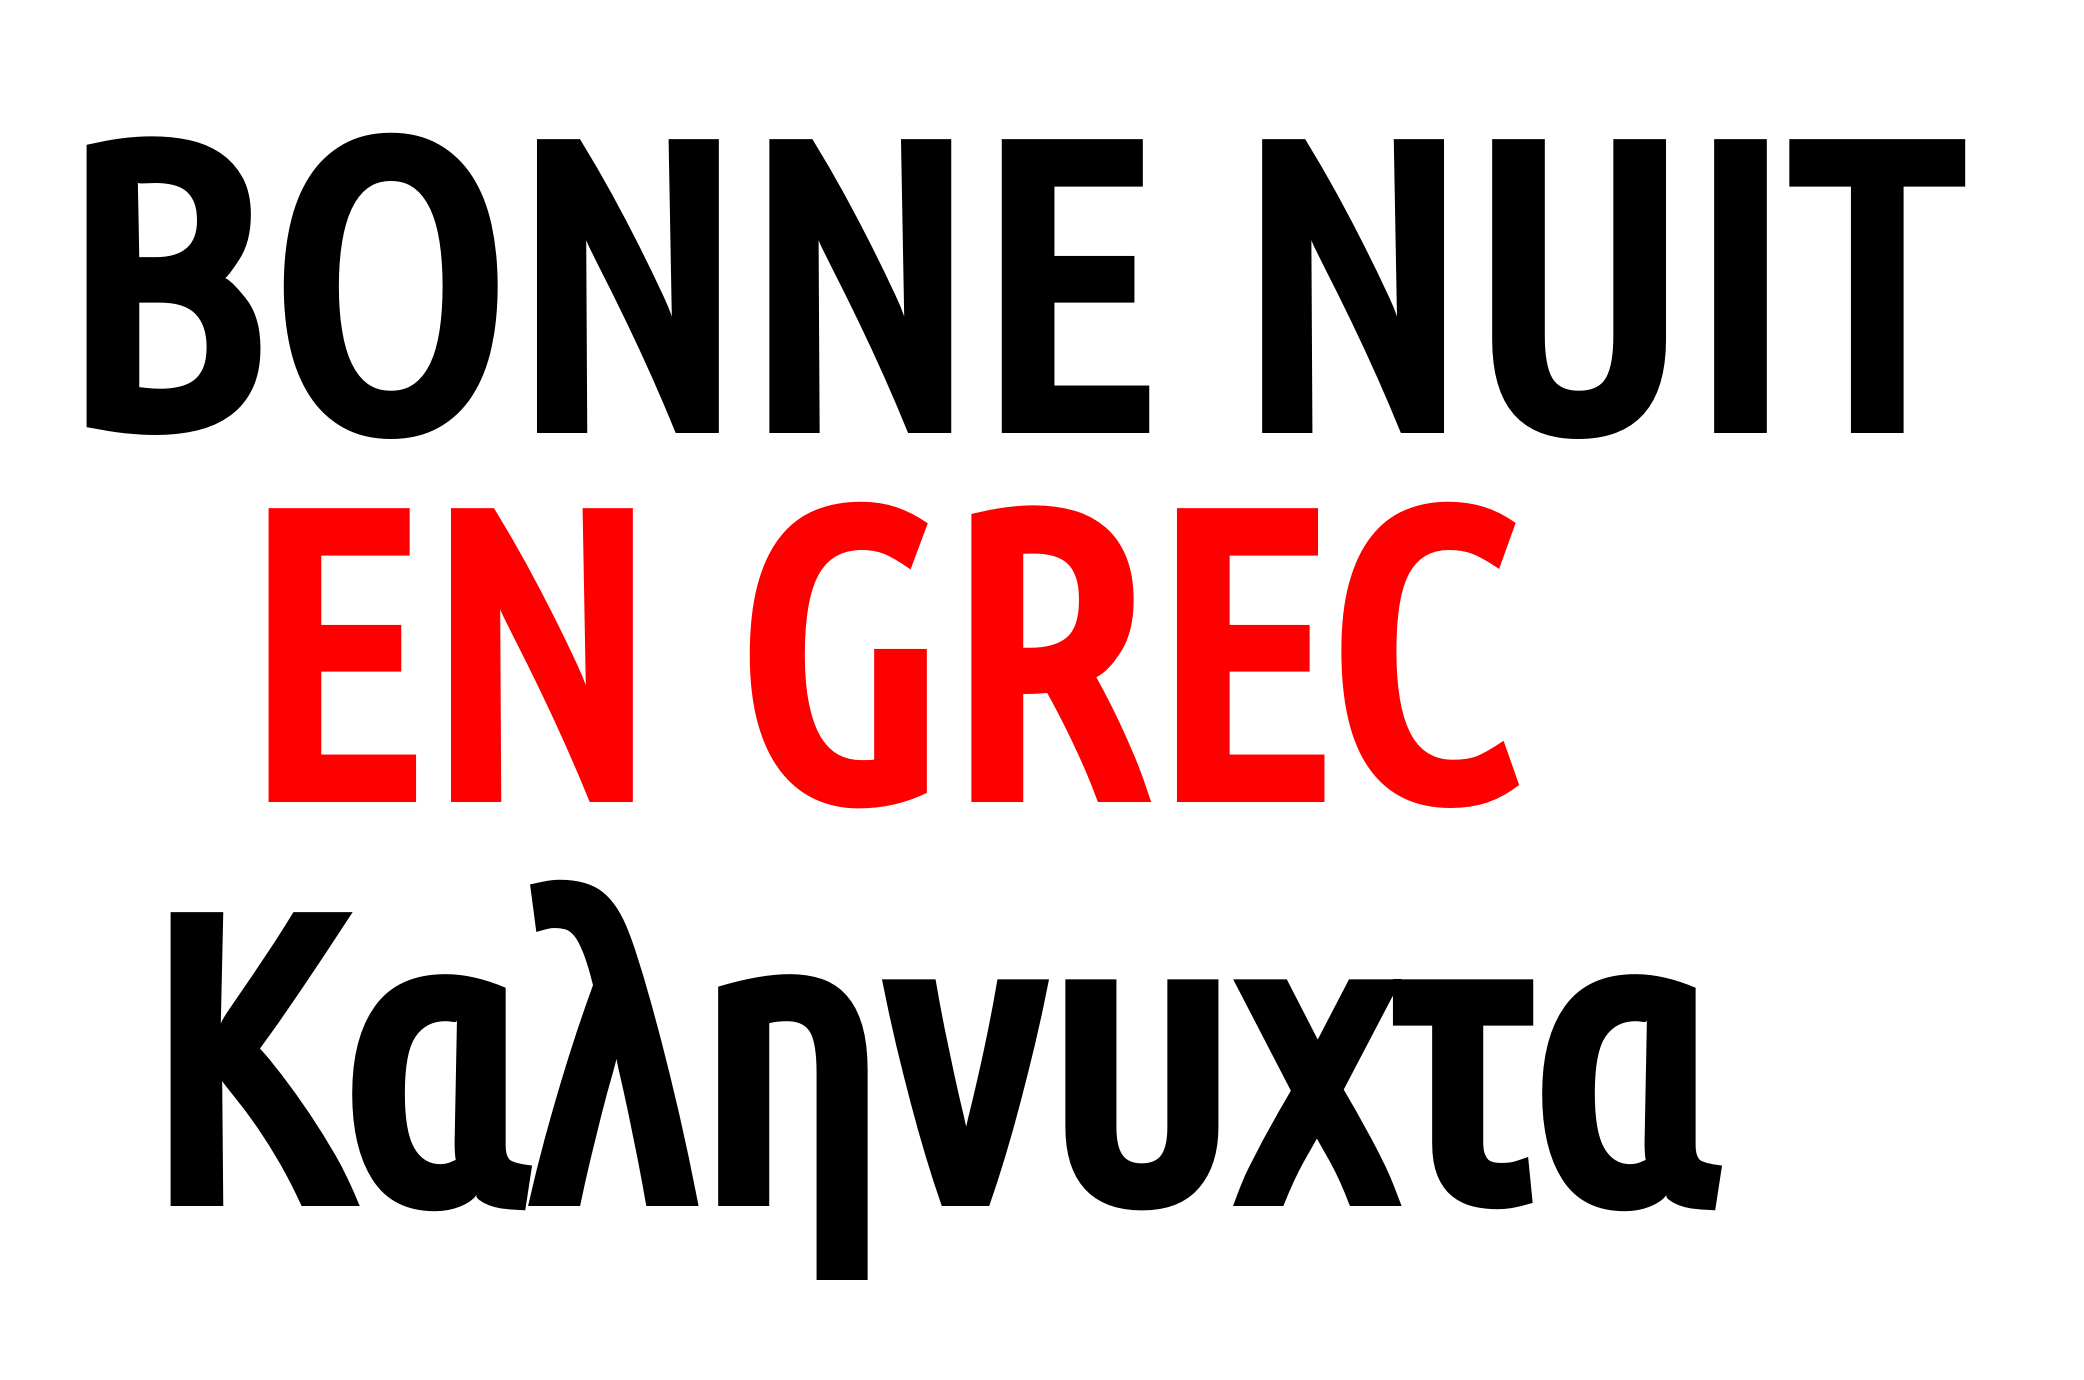 Comment dire "bonne nuit" en grec ?